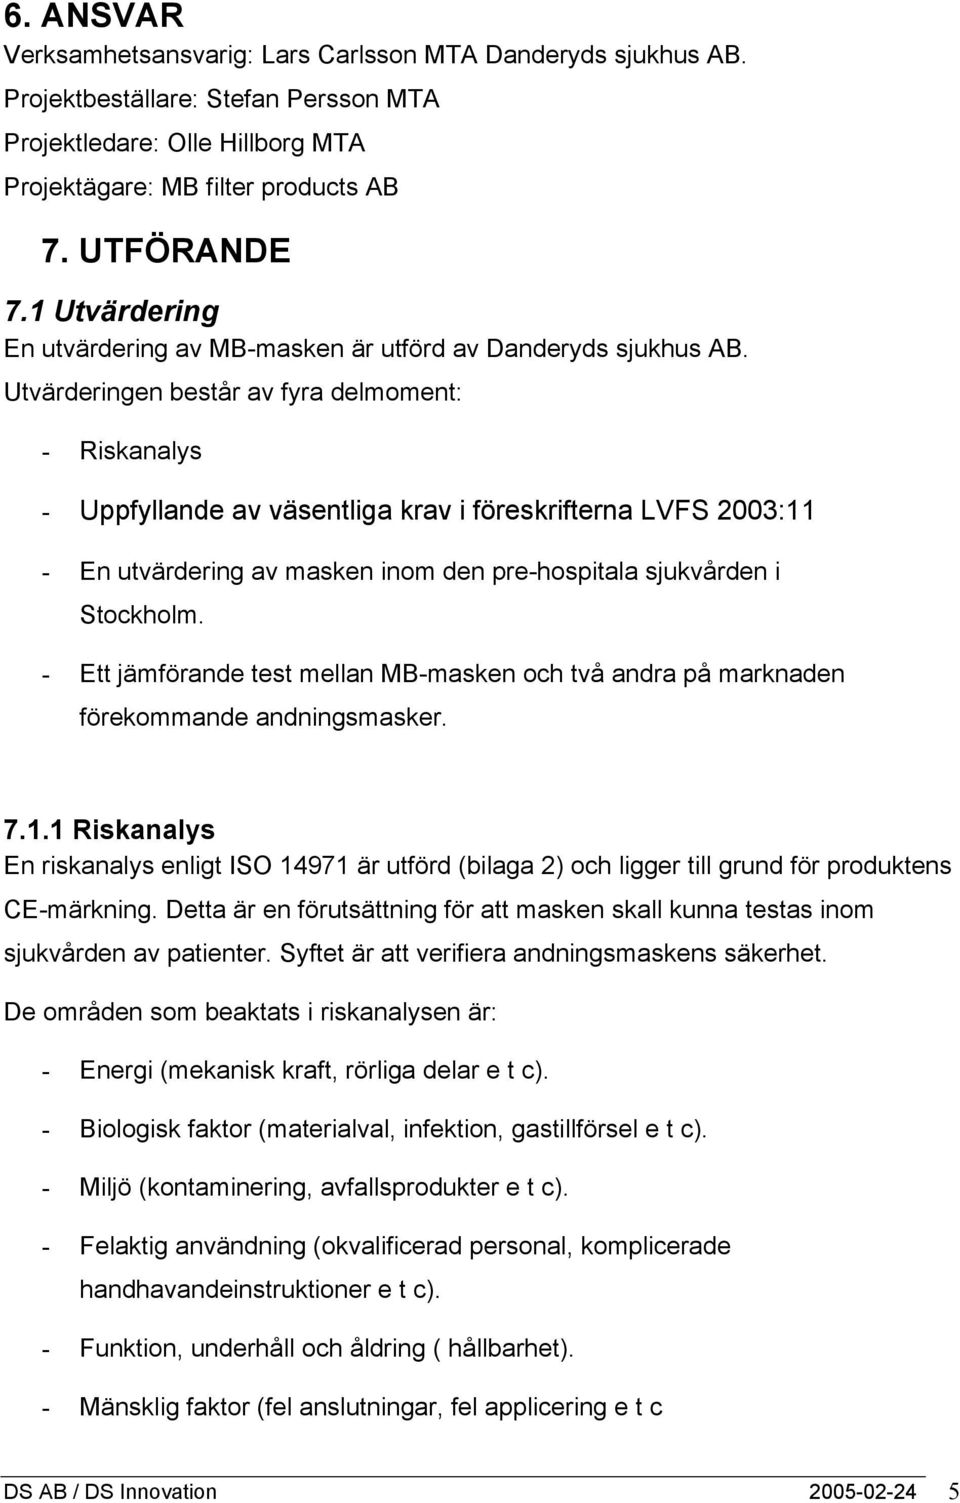 Utvärderingen består av fyra delmoment: - Riskanalys - Uppfyllande av väsentliga krav i föreskrifterna LVFS 2003:11 - En utvärdering av masken inom den pre-hospitala sjukvården i Stockholm.